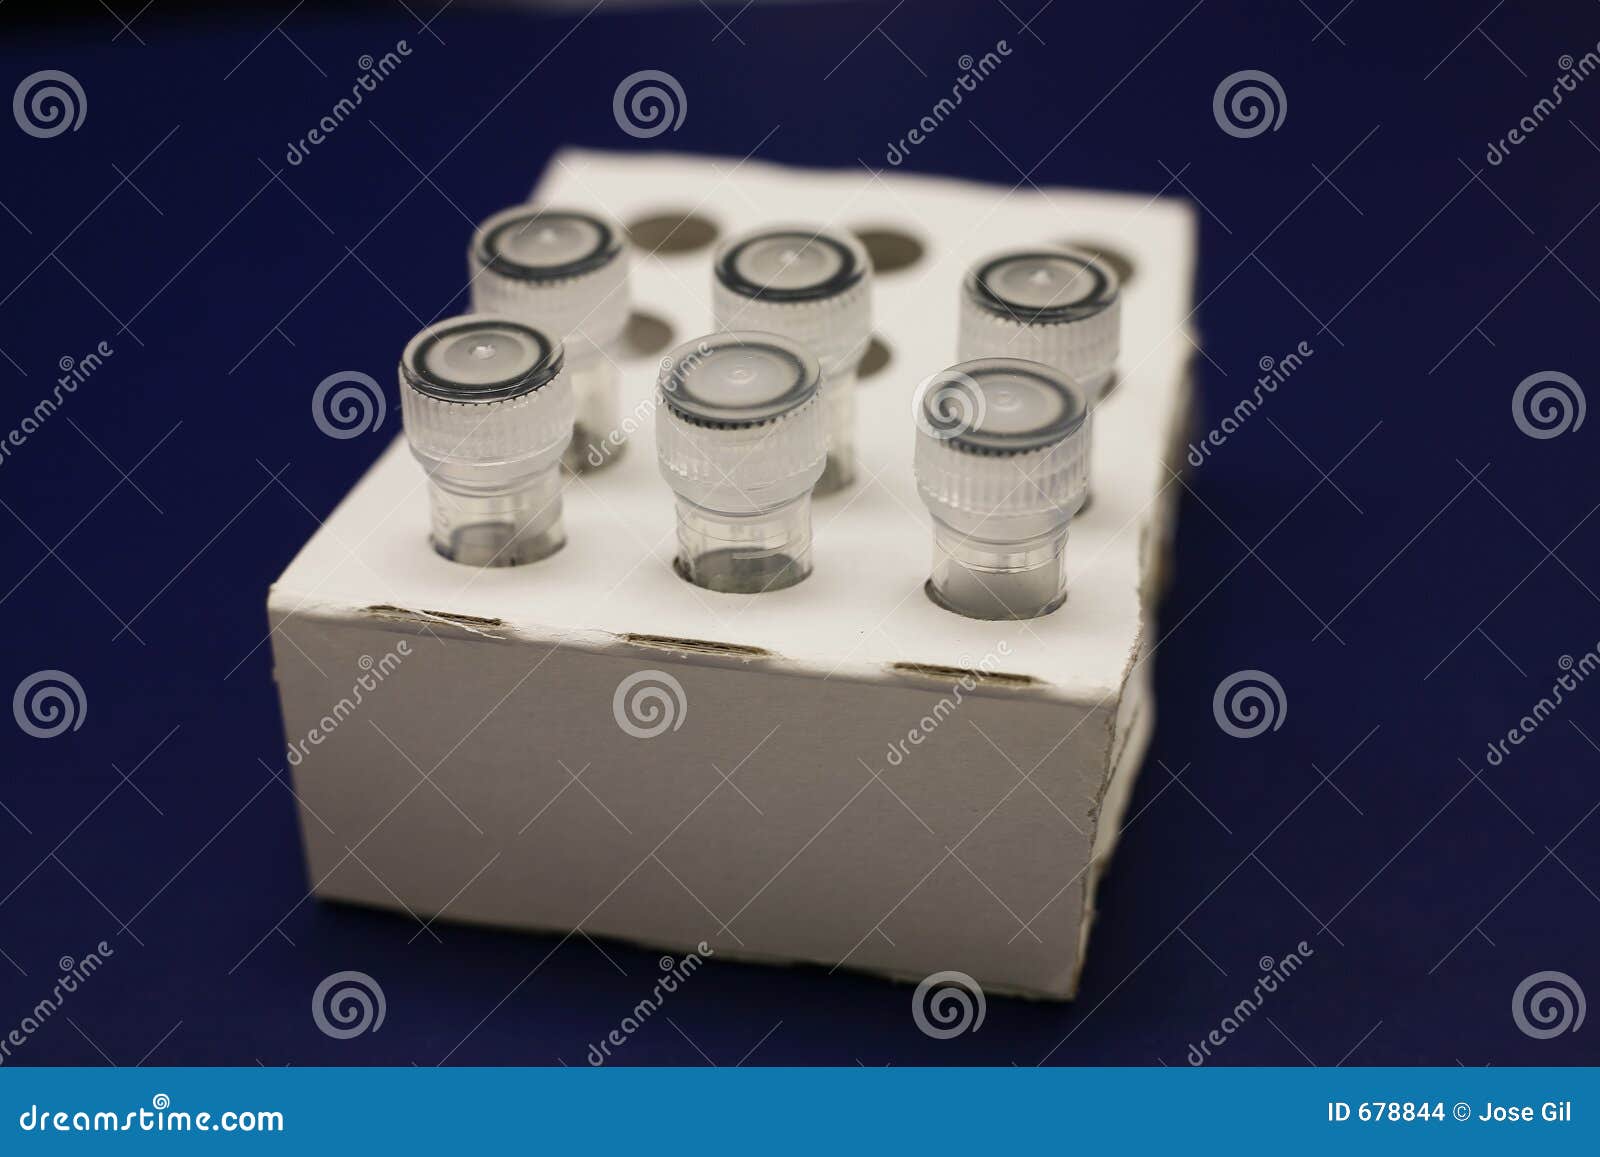 micro centrifuge tubes 1